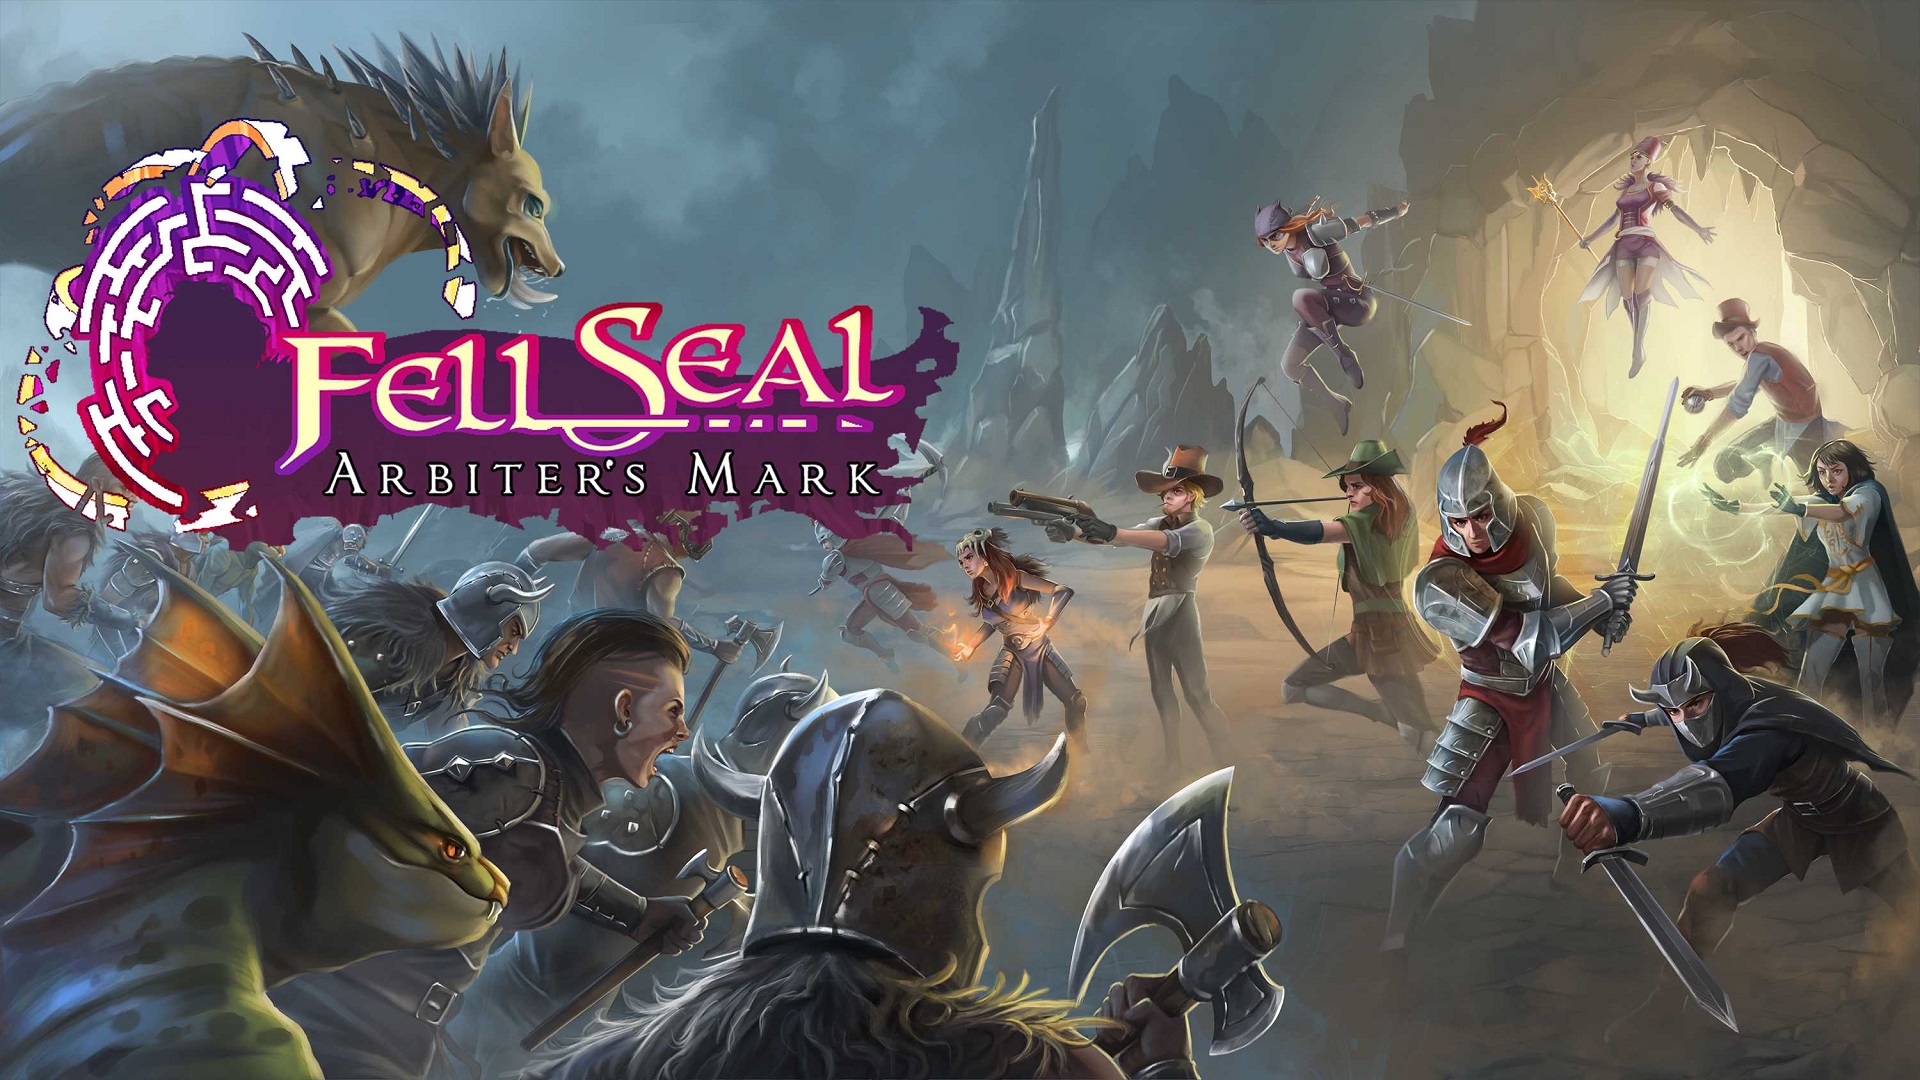 Fell Seal: Arbiter’s Mark Tactical RPG Releases New Trailer